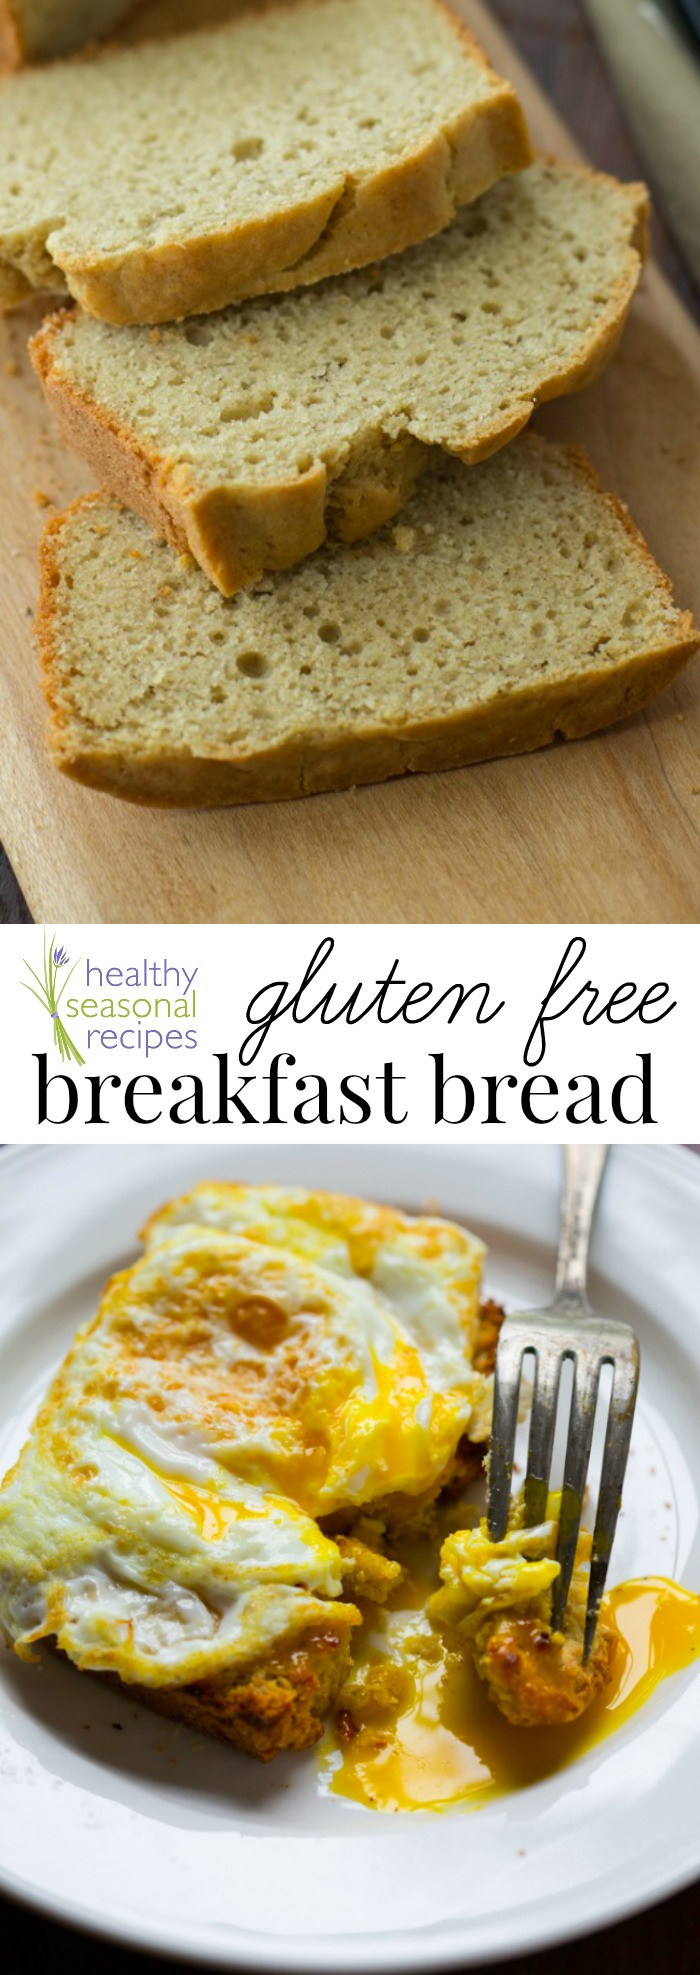 Healthy Gluten Free Bread
 gluten free breakfast bread Healthy Seasonal Recipes